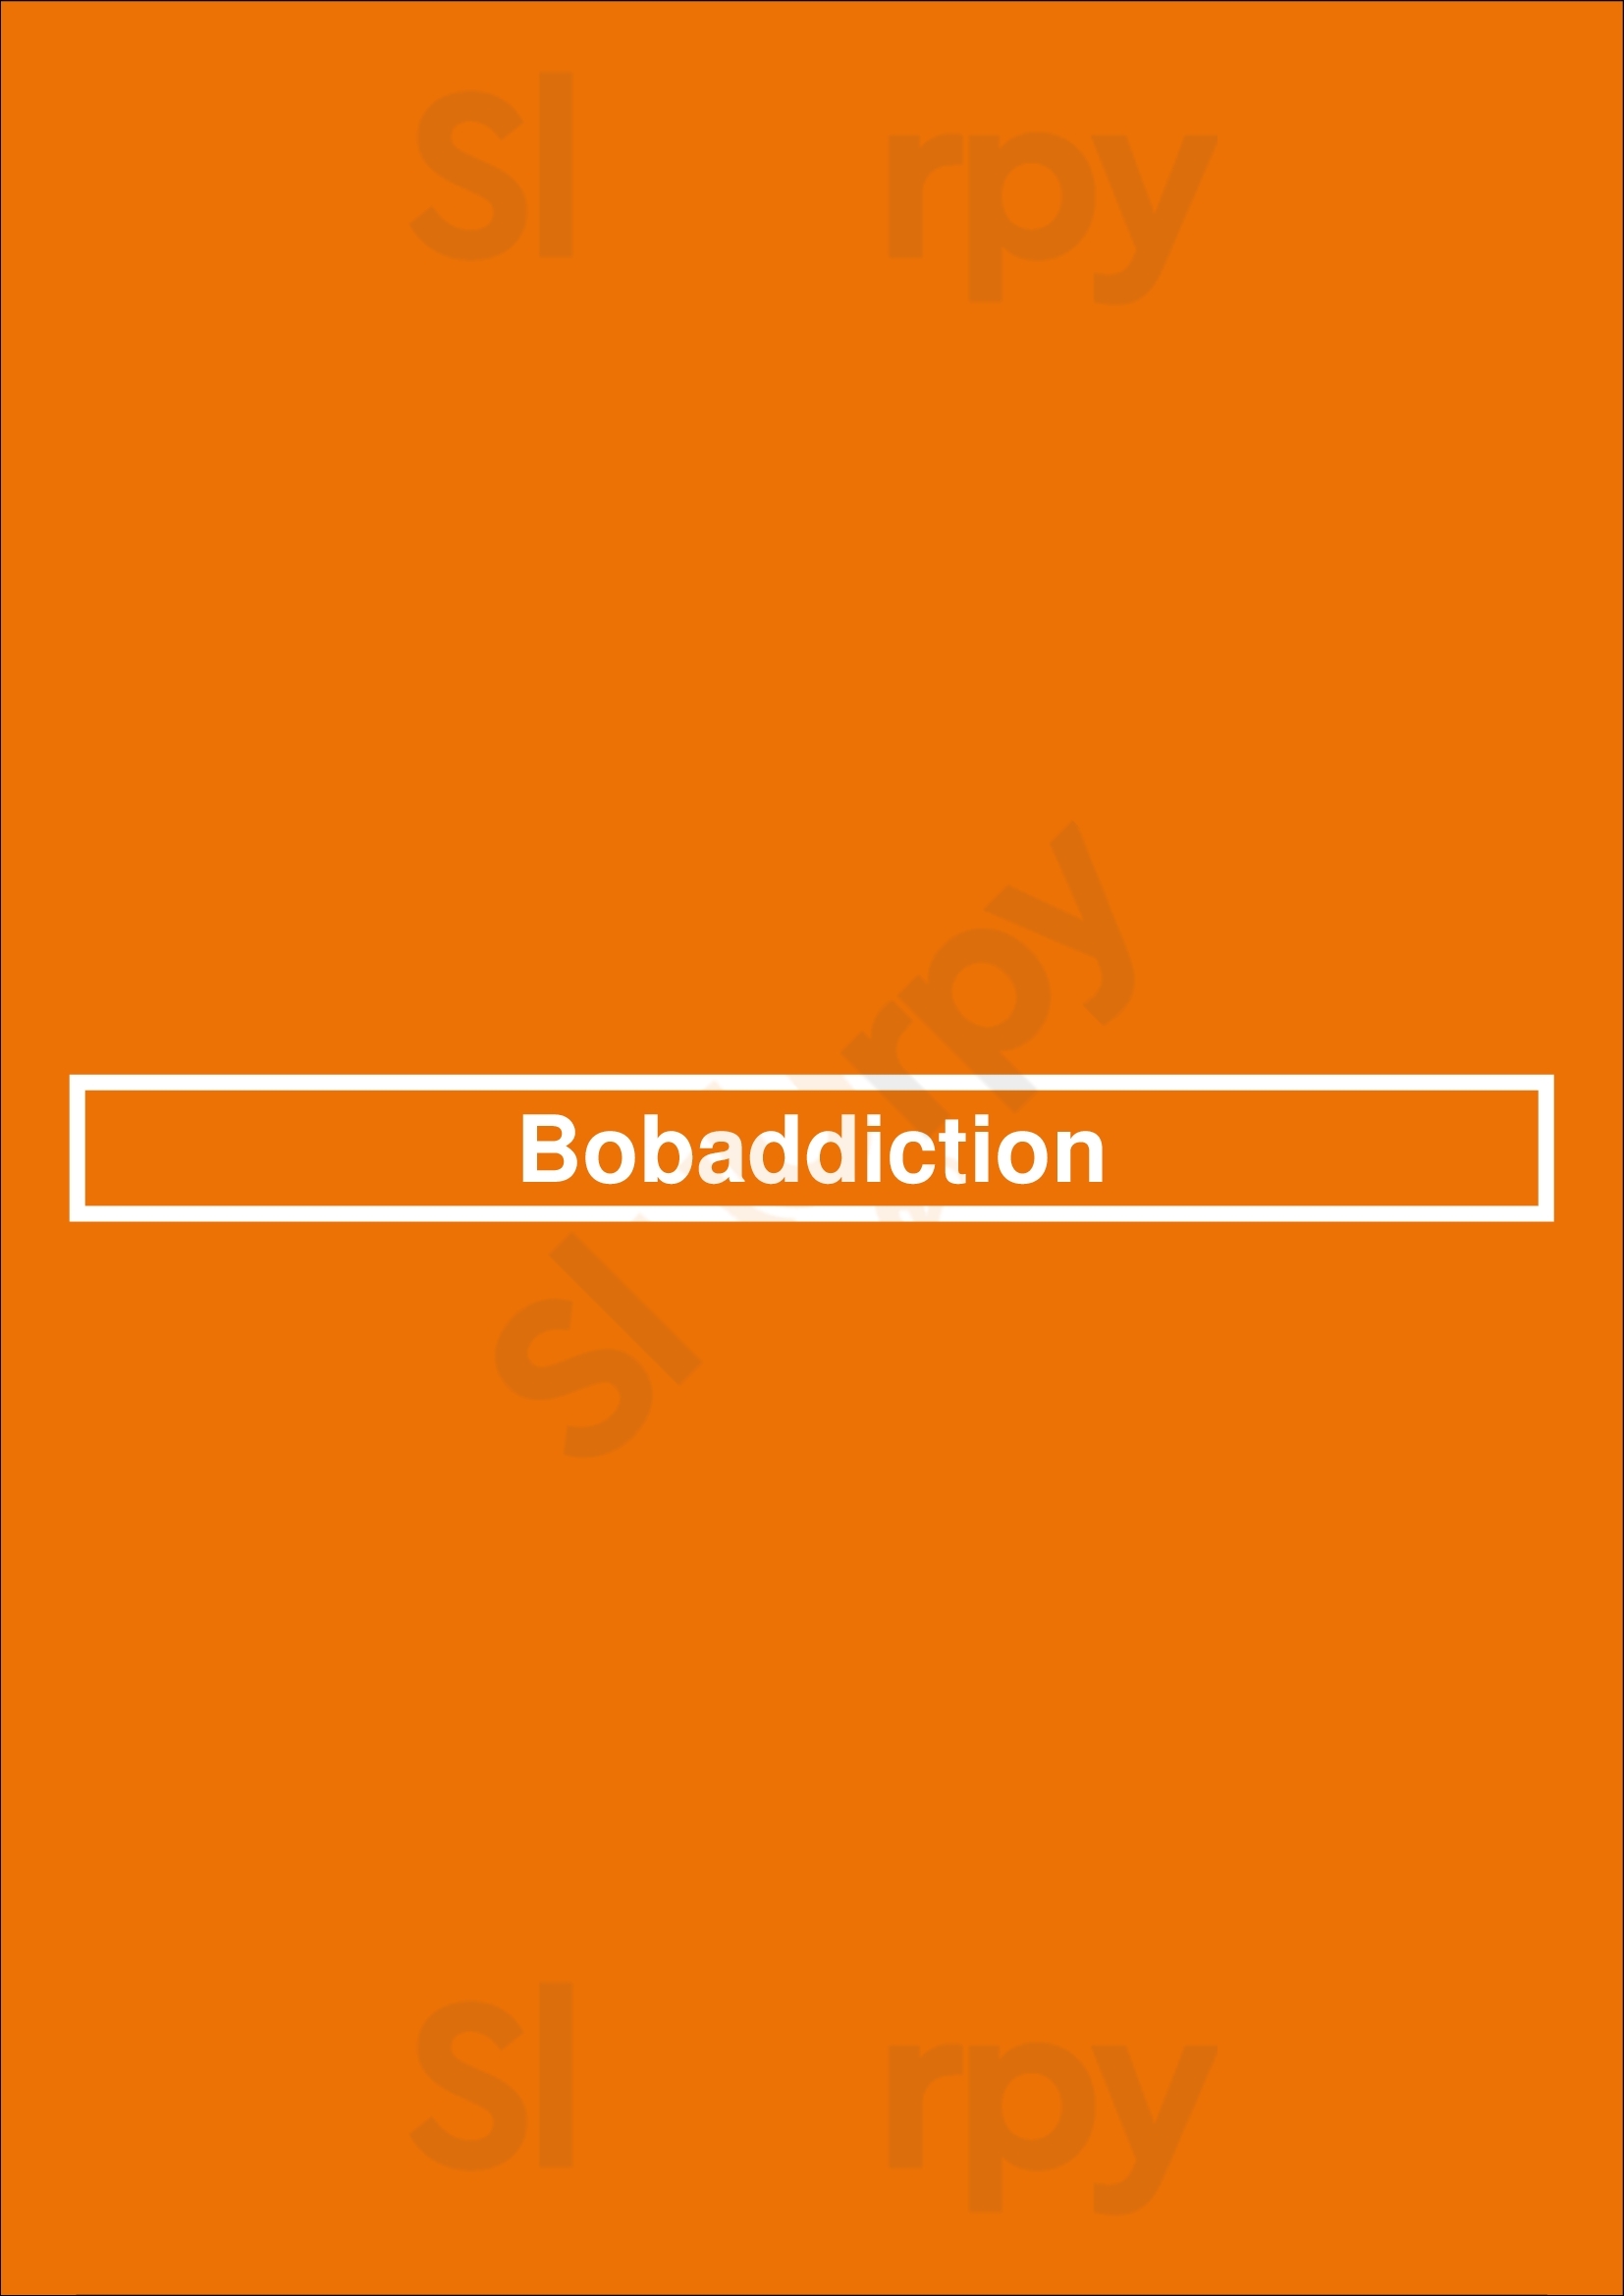 Bobaddiction Dallas Menu - 1